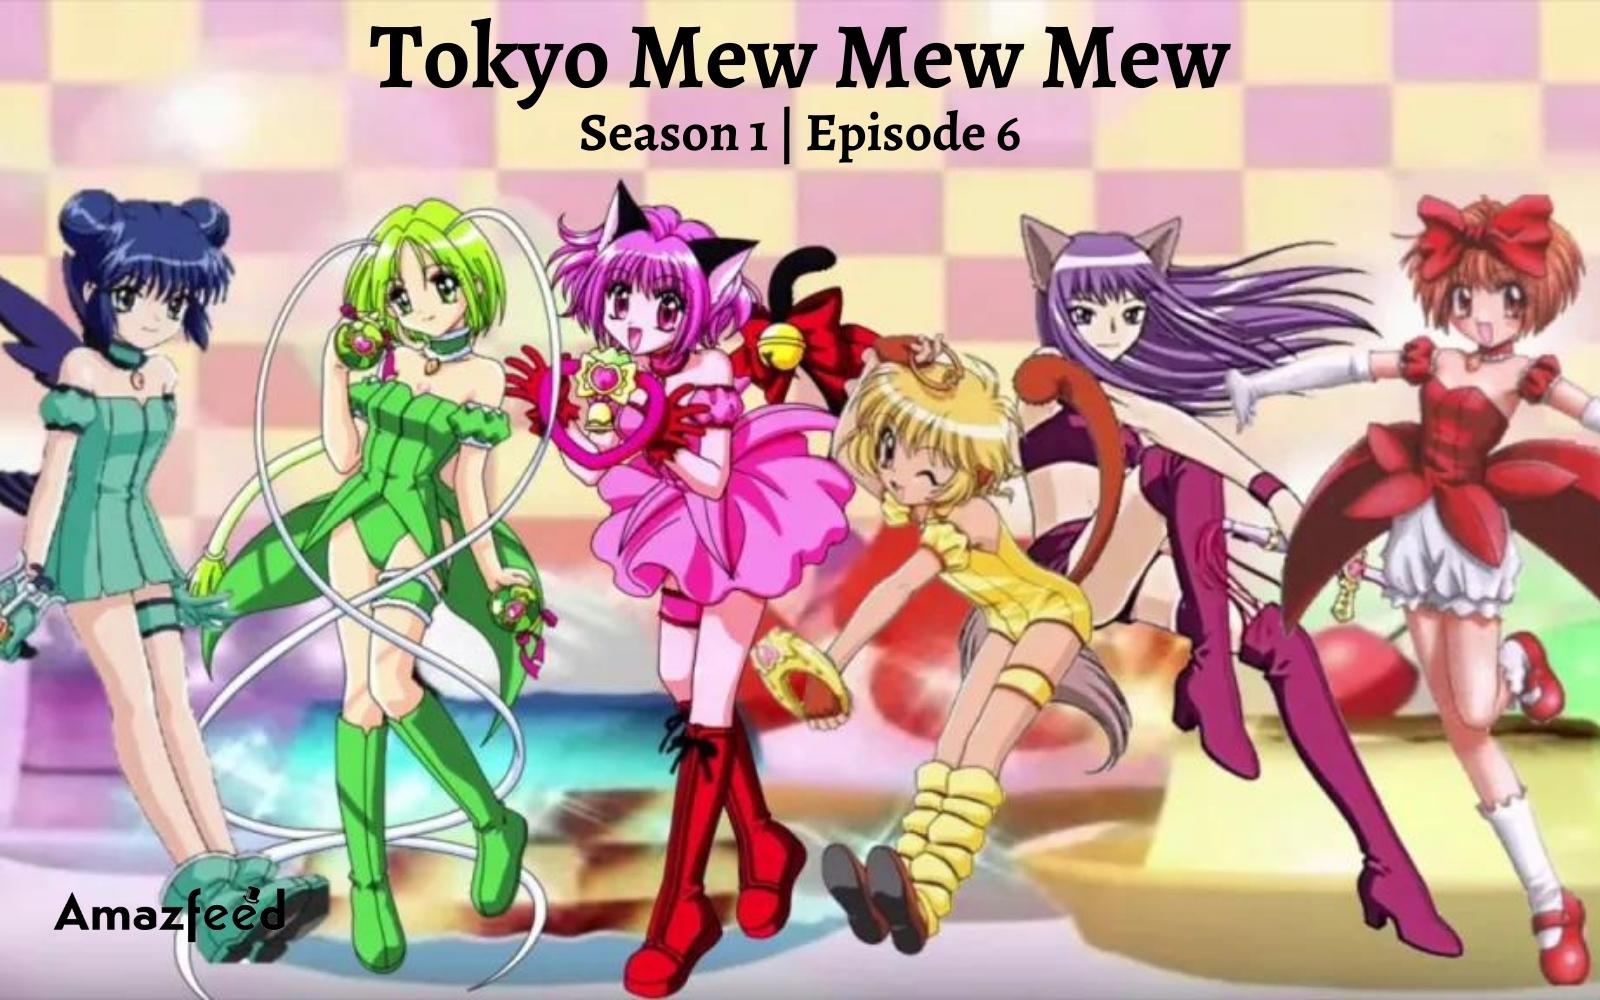 Tokyo Mew Mew Mew Episode 6 : Countdown, Release Date, Spoiler, Cast & Recap